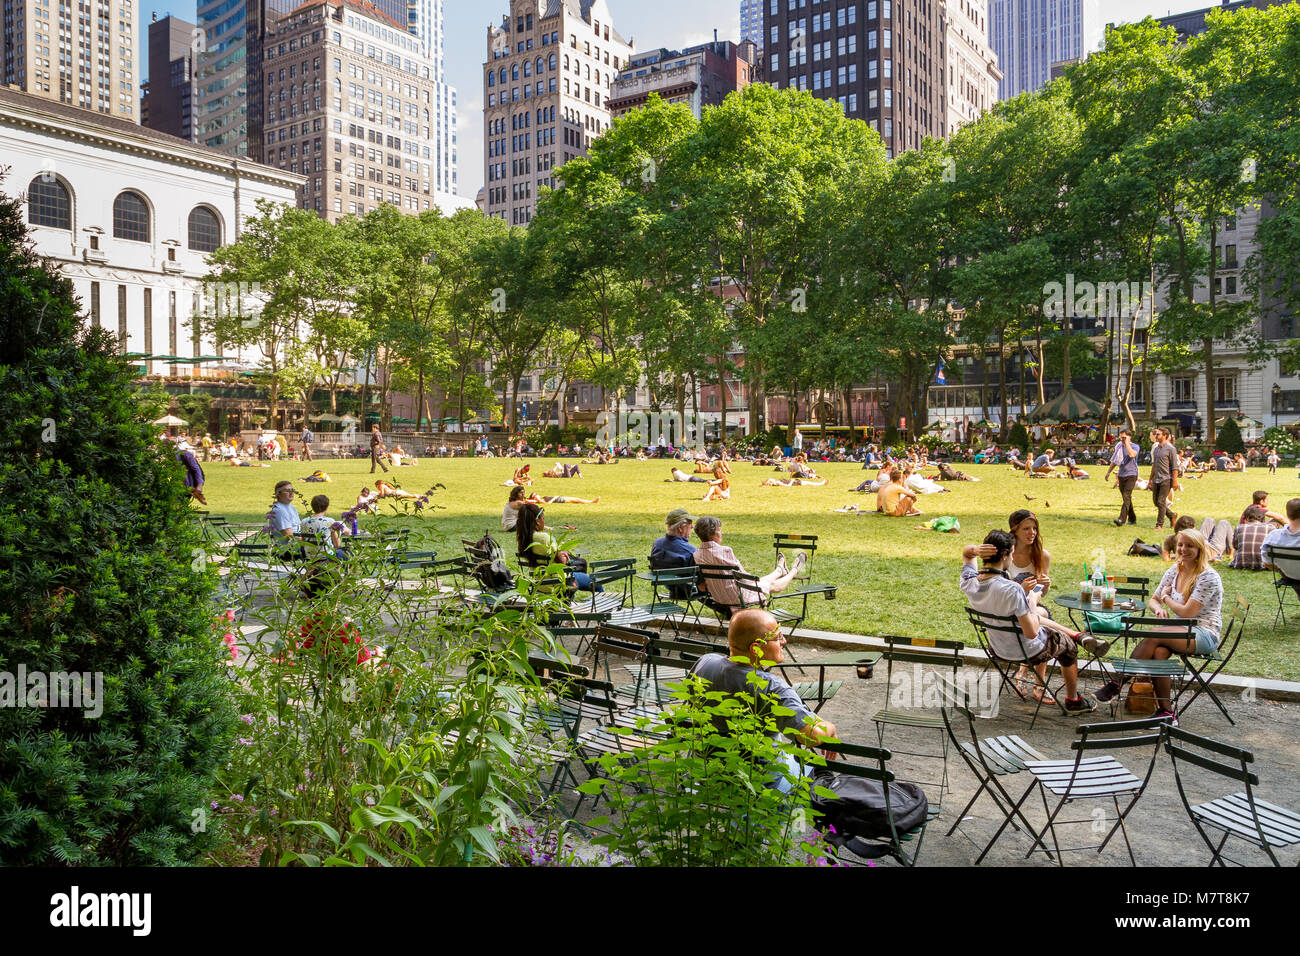 Le persone che godono di una giornata estiva nel Bryant Park un parco cittadino nel centro di Manhattan, New York City, NY, USA Foto Stock